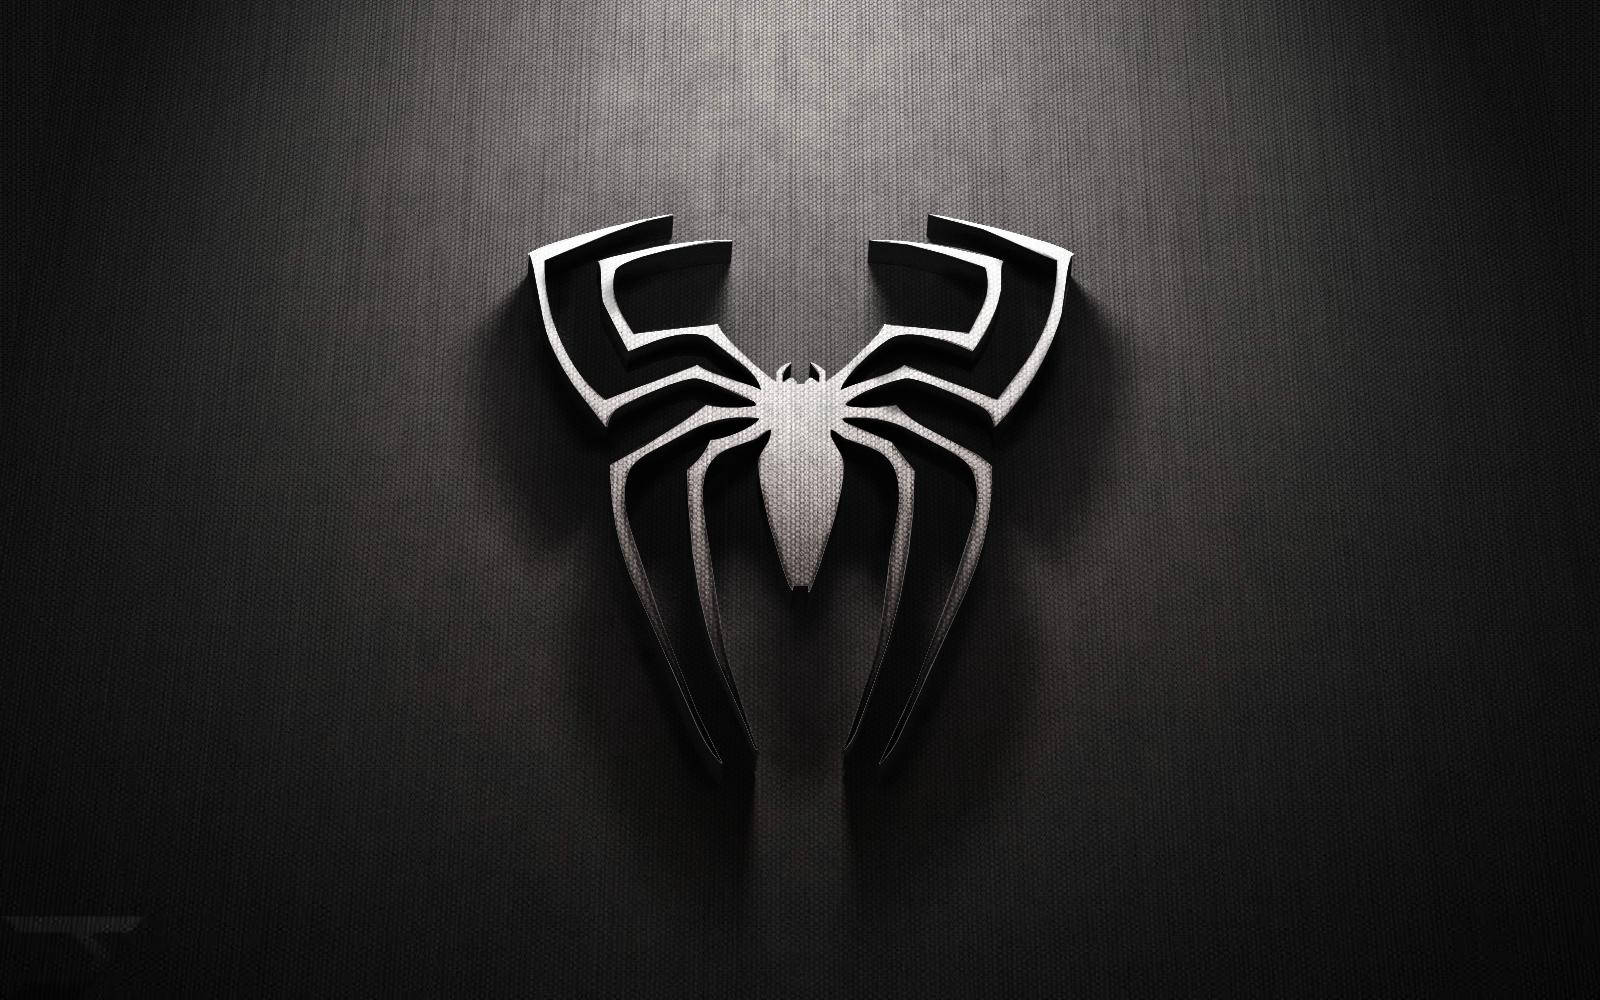 Spiderman Hvidt Logo Præget I Mørke. Wallpaper